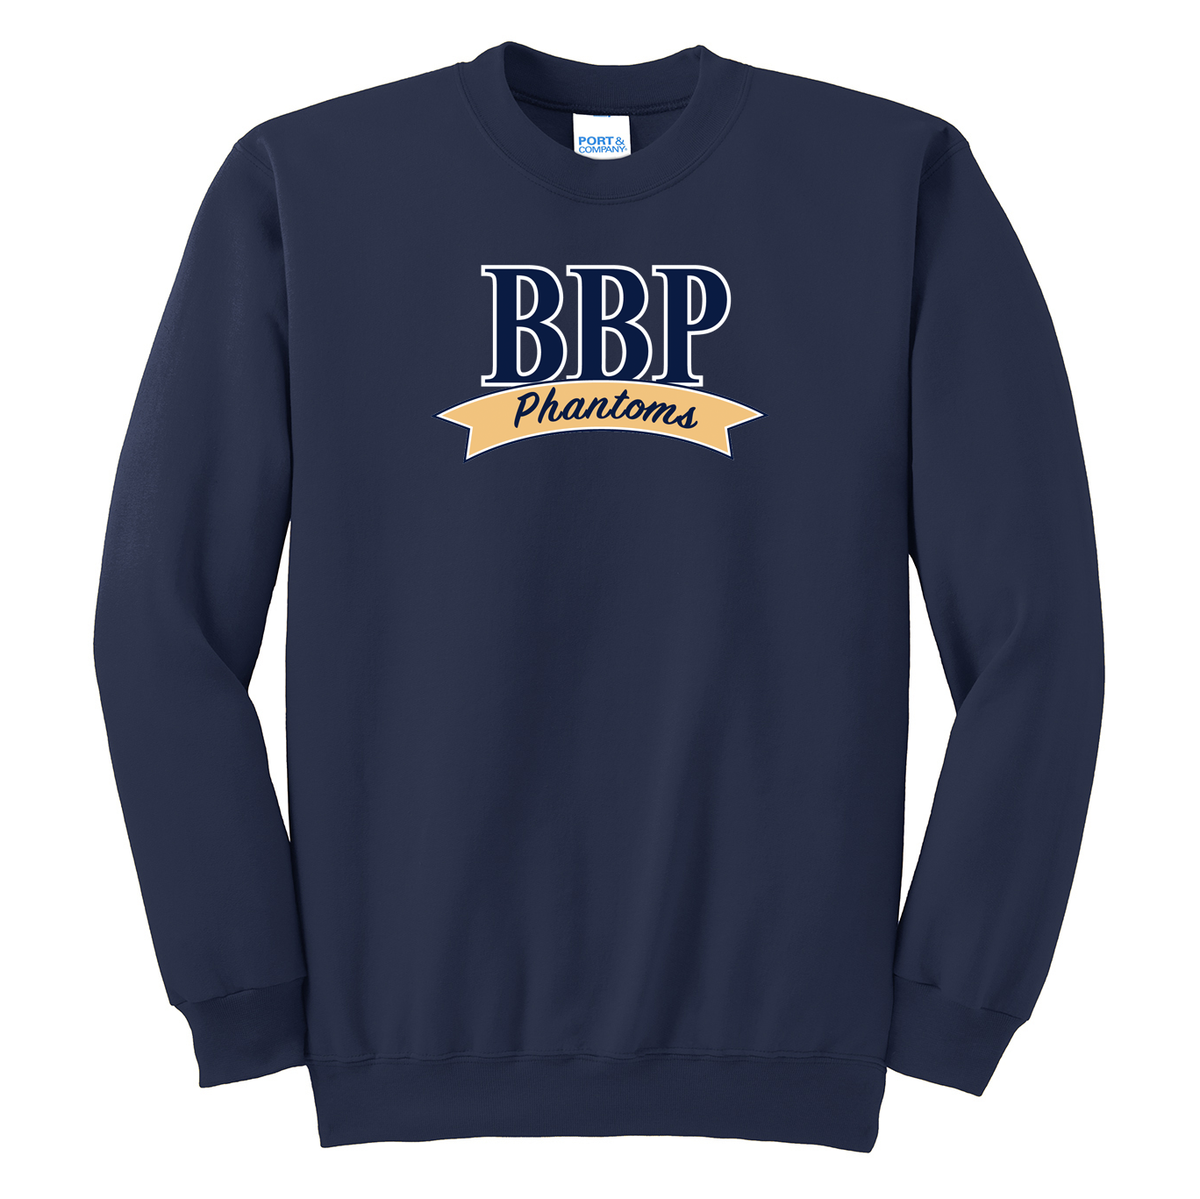 BBP Schools Crew Neck Sweater